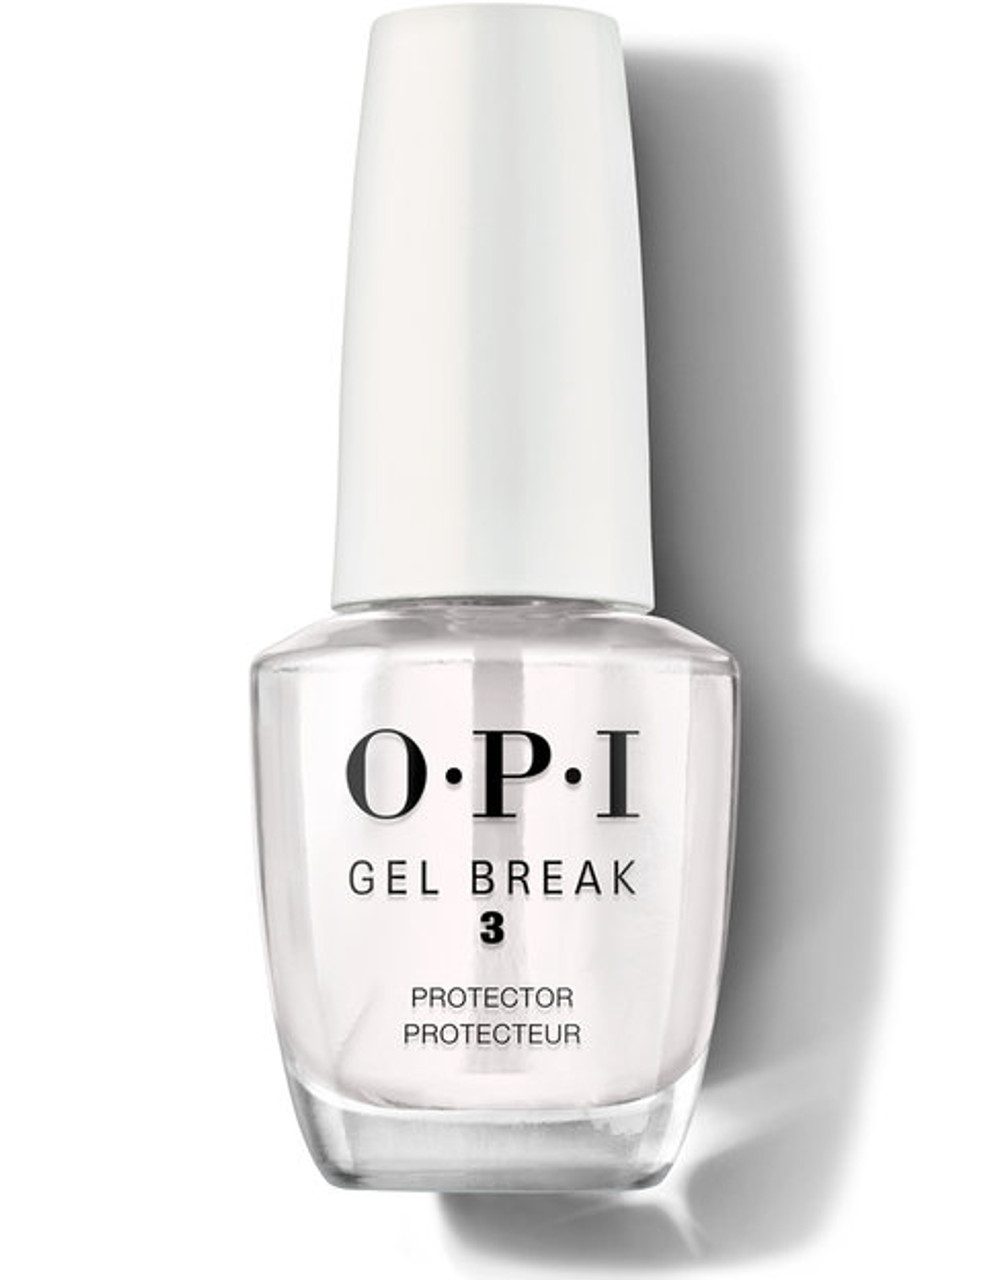 OPI Gel Break 2 - Barely Beige - Sunshine Beauty Supply